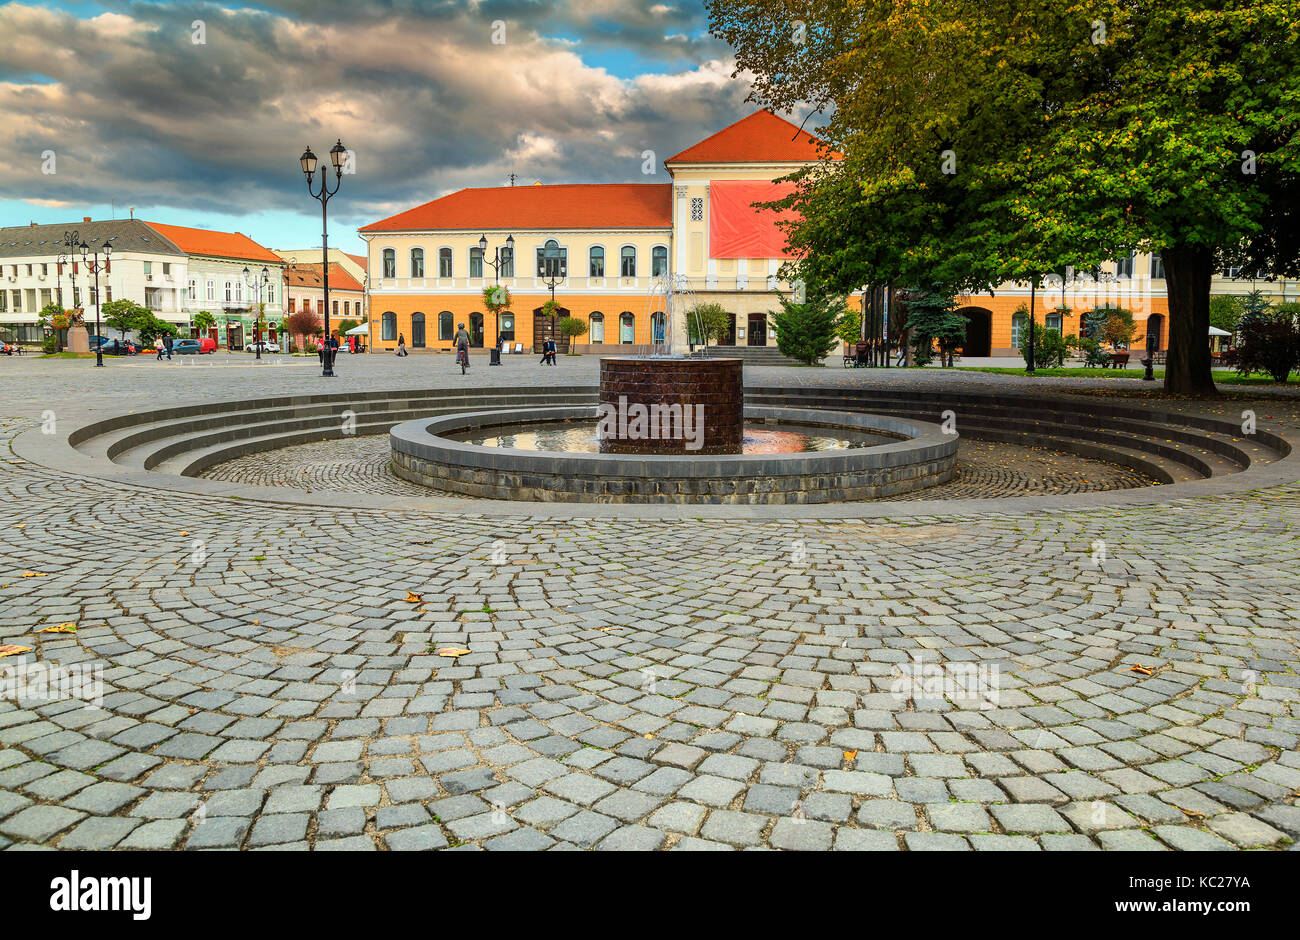 Incredibile della Transilvania città turistica e pavimentata dal centro città con la famosa fontana, sepsiszentgyorgy (Sfantu Gheorghe), Transilvania, Romania, europa Foto Stock